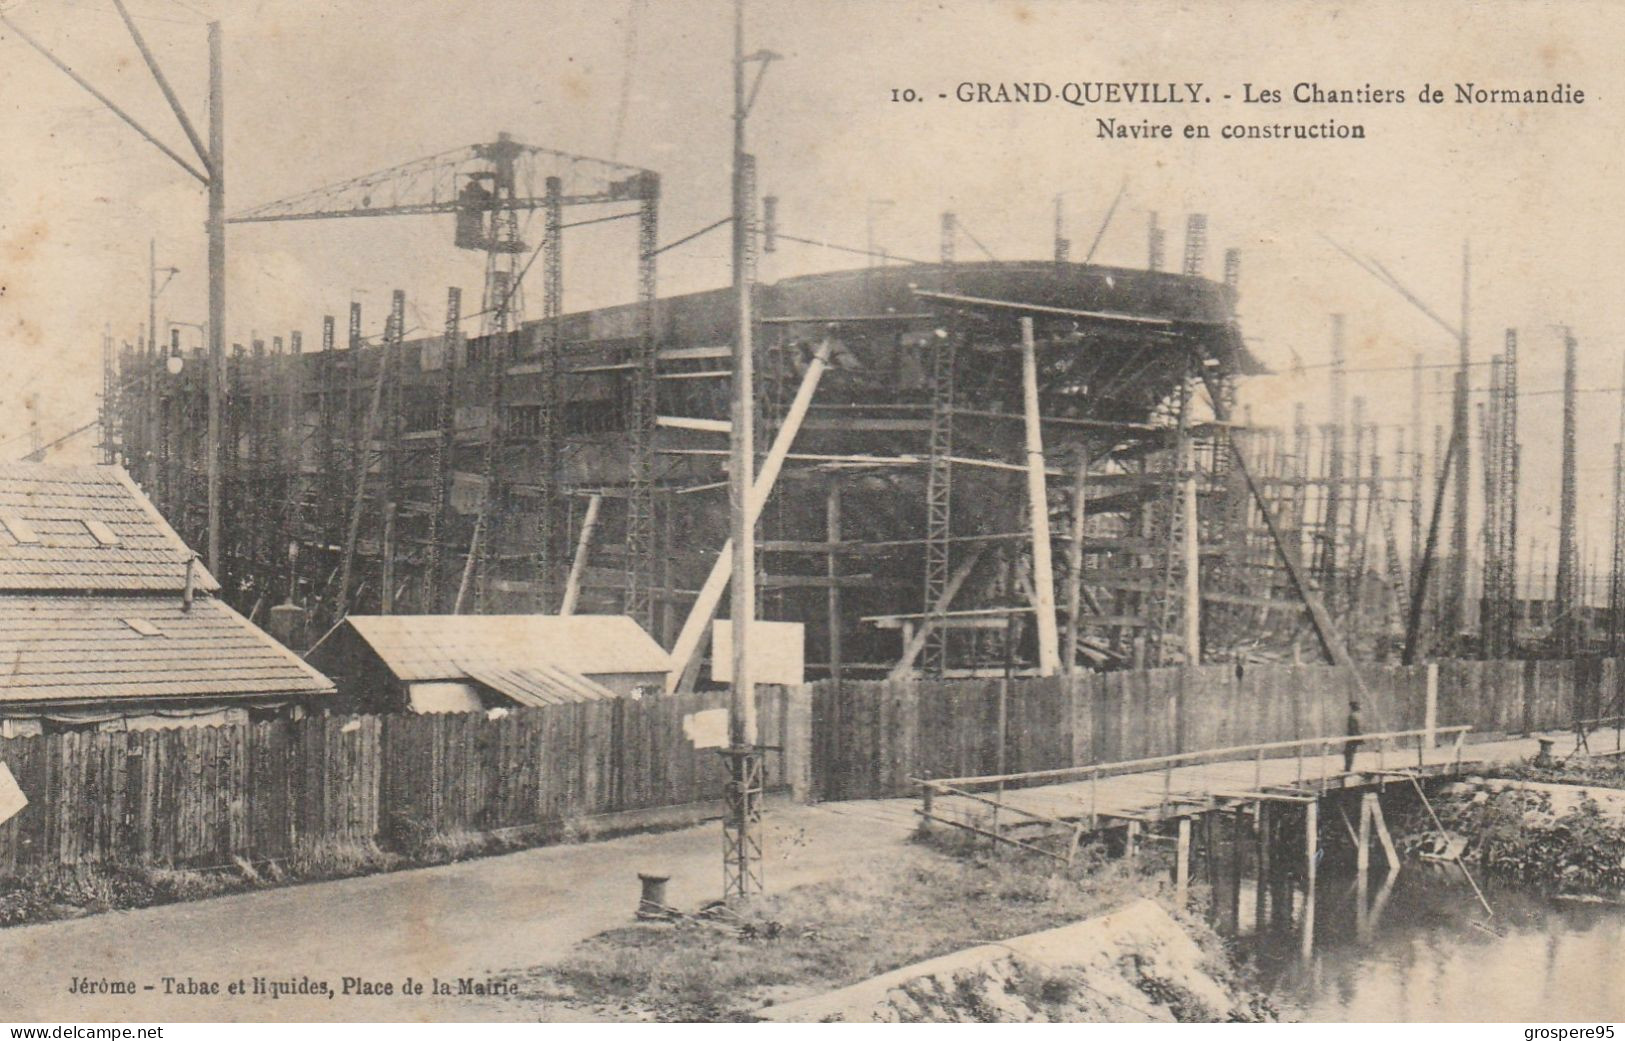 GRAND QUEVILLY NAVIRE EN CONSTRUCTION - Le Grand-Quevilly